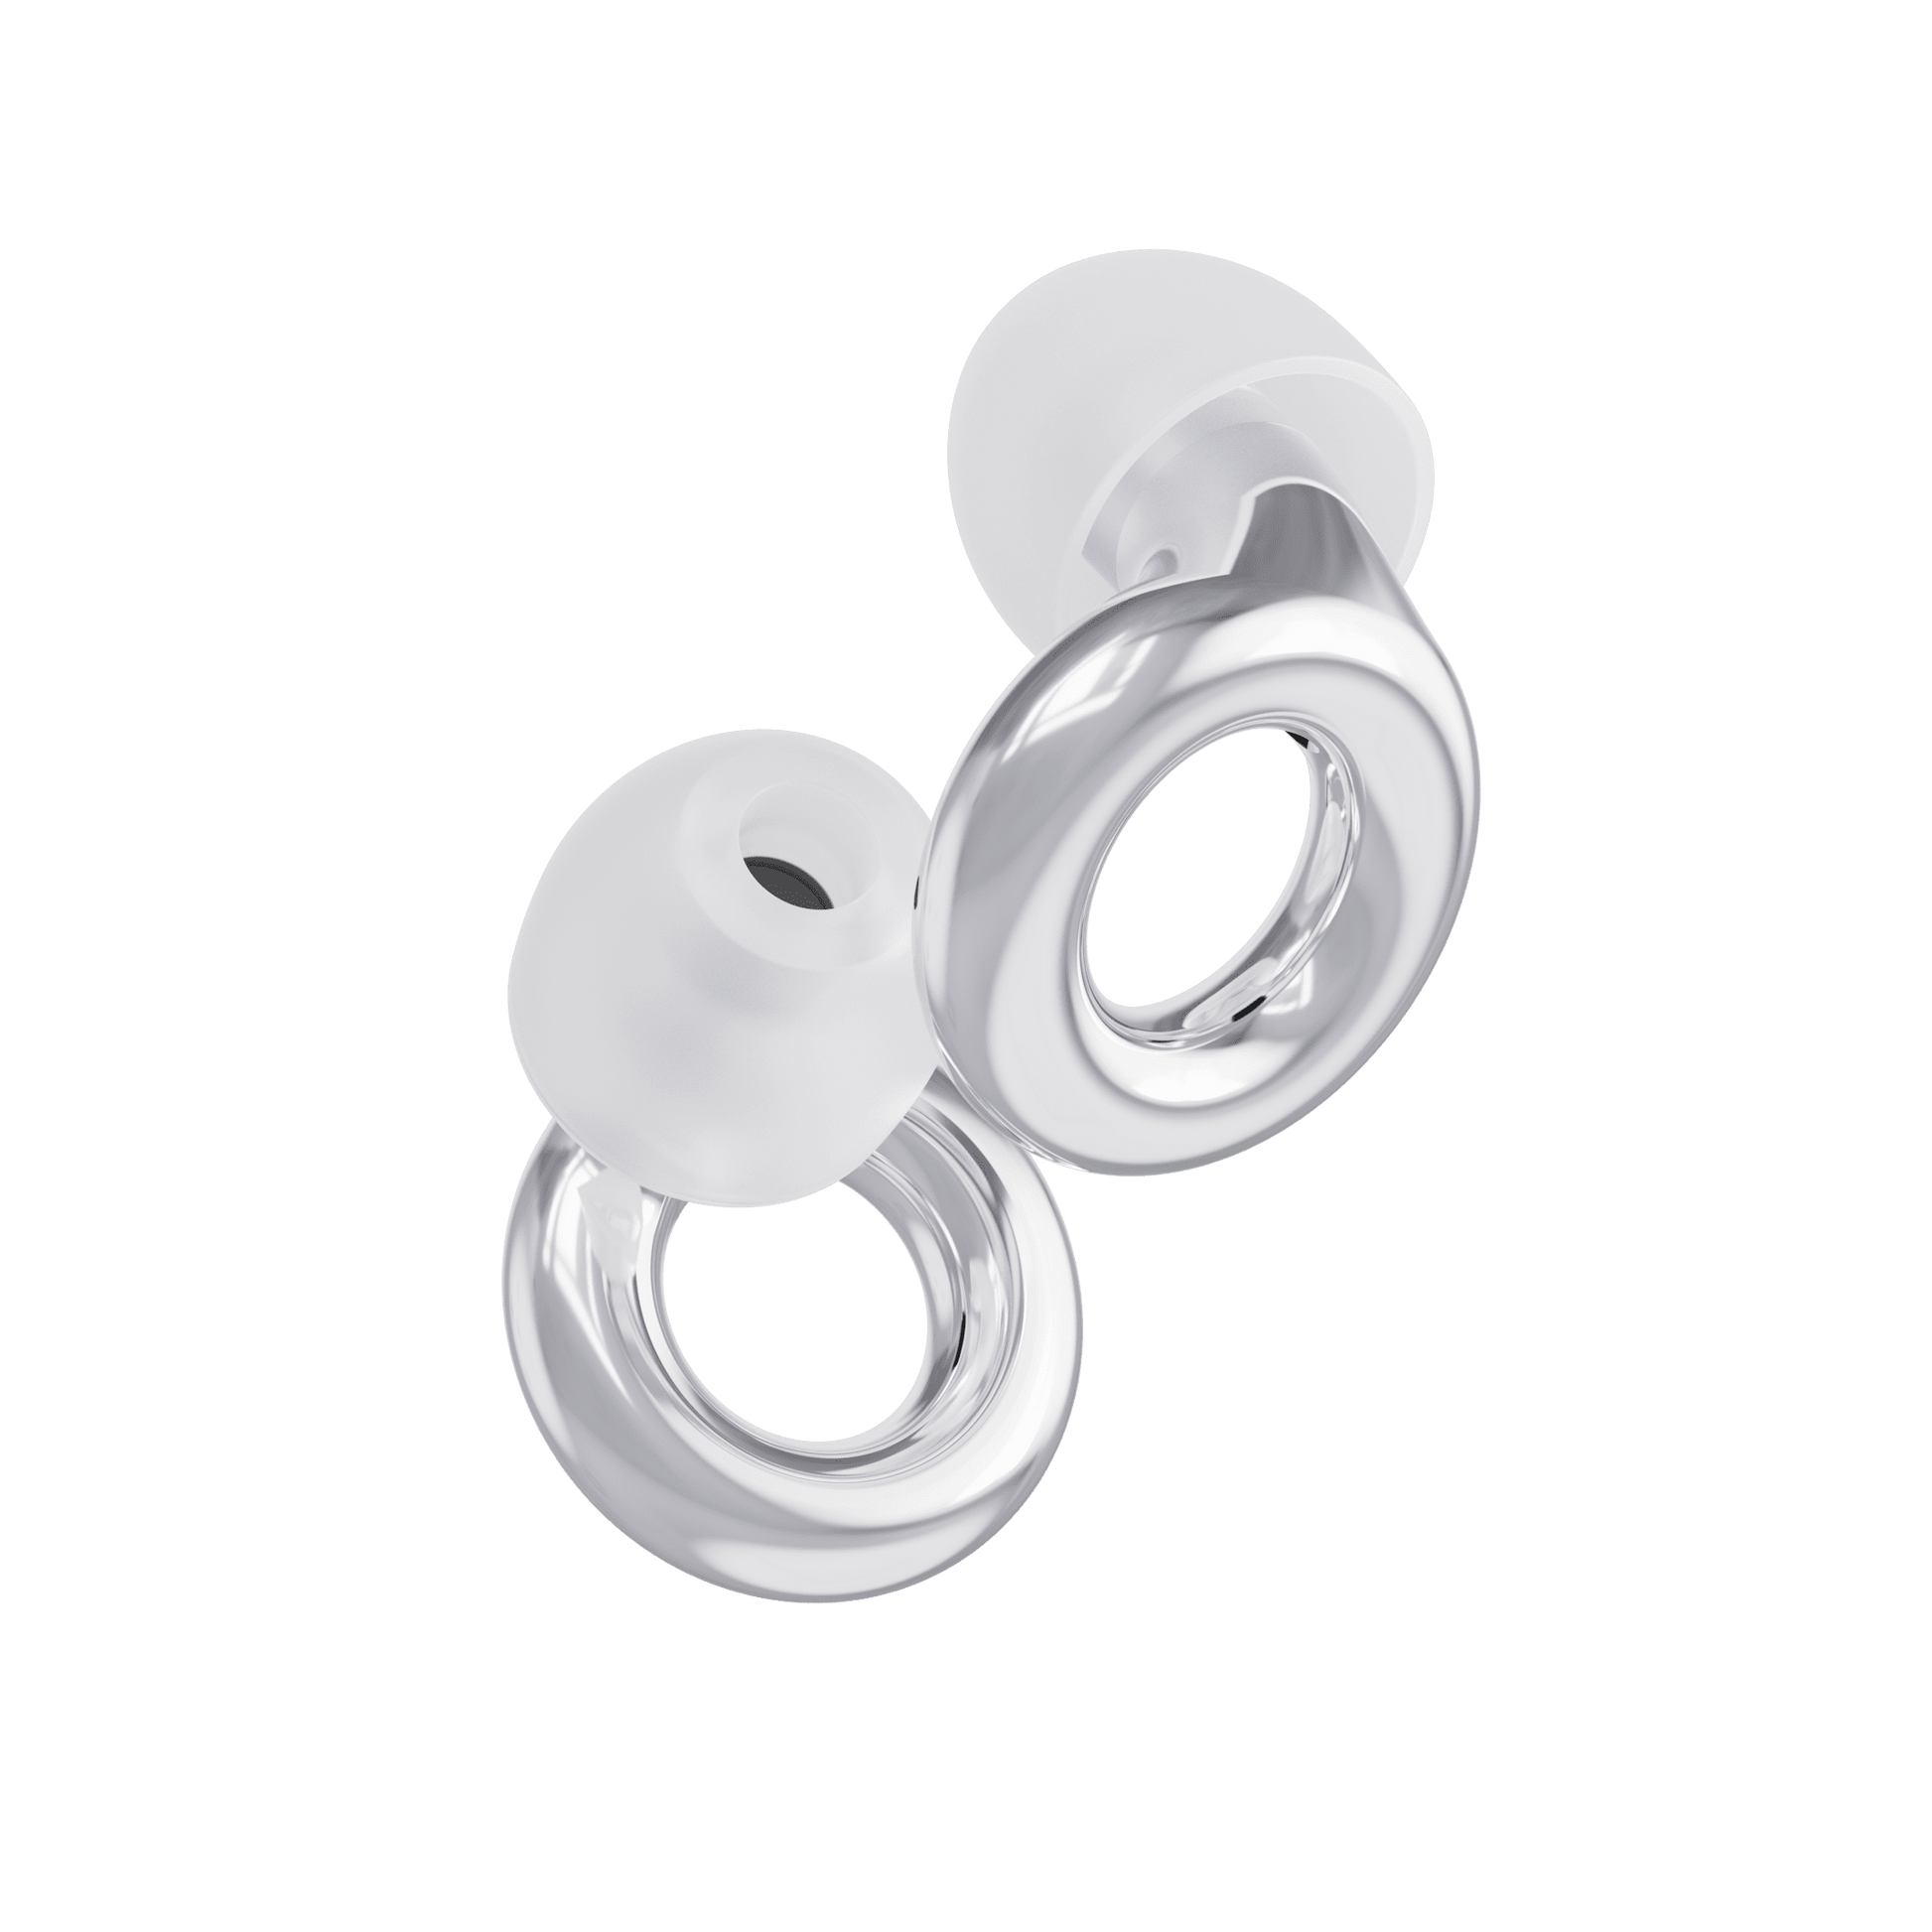  Loop Earplugs Day & Night Plus Mute Bundle (2-Pack) – Loop  Quiet + Loop Experience Plus + Loop Mute, Reusable Ear Plugs for Sleep,  Focus, Noise, Concerts & More